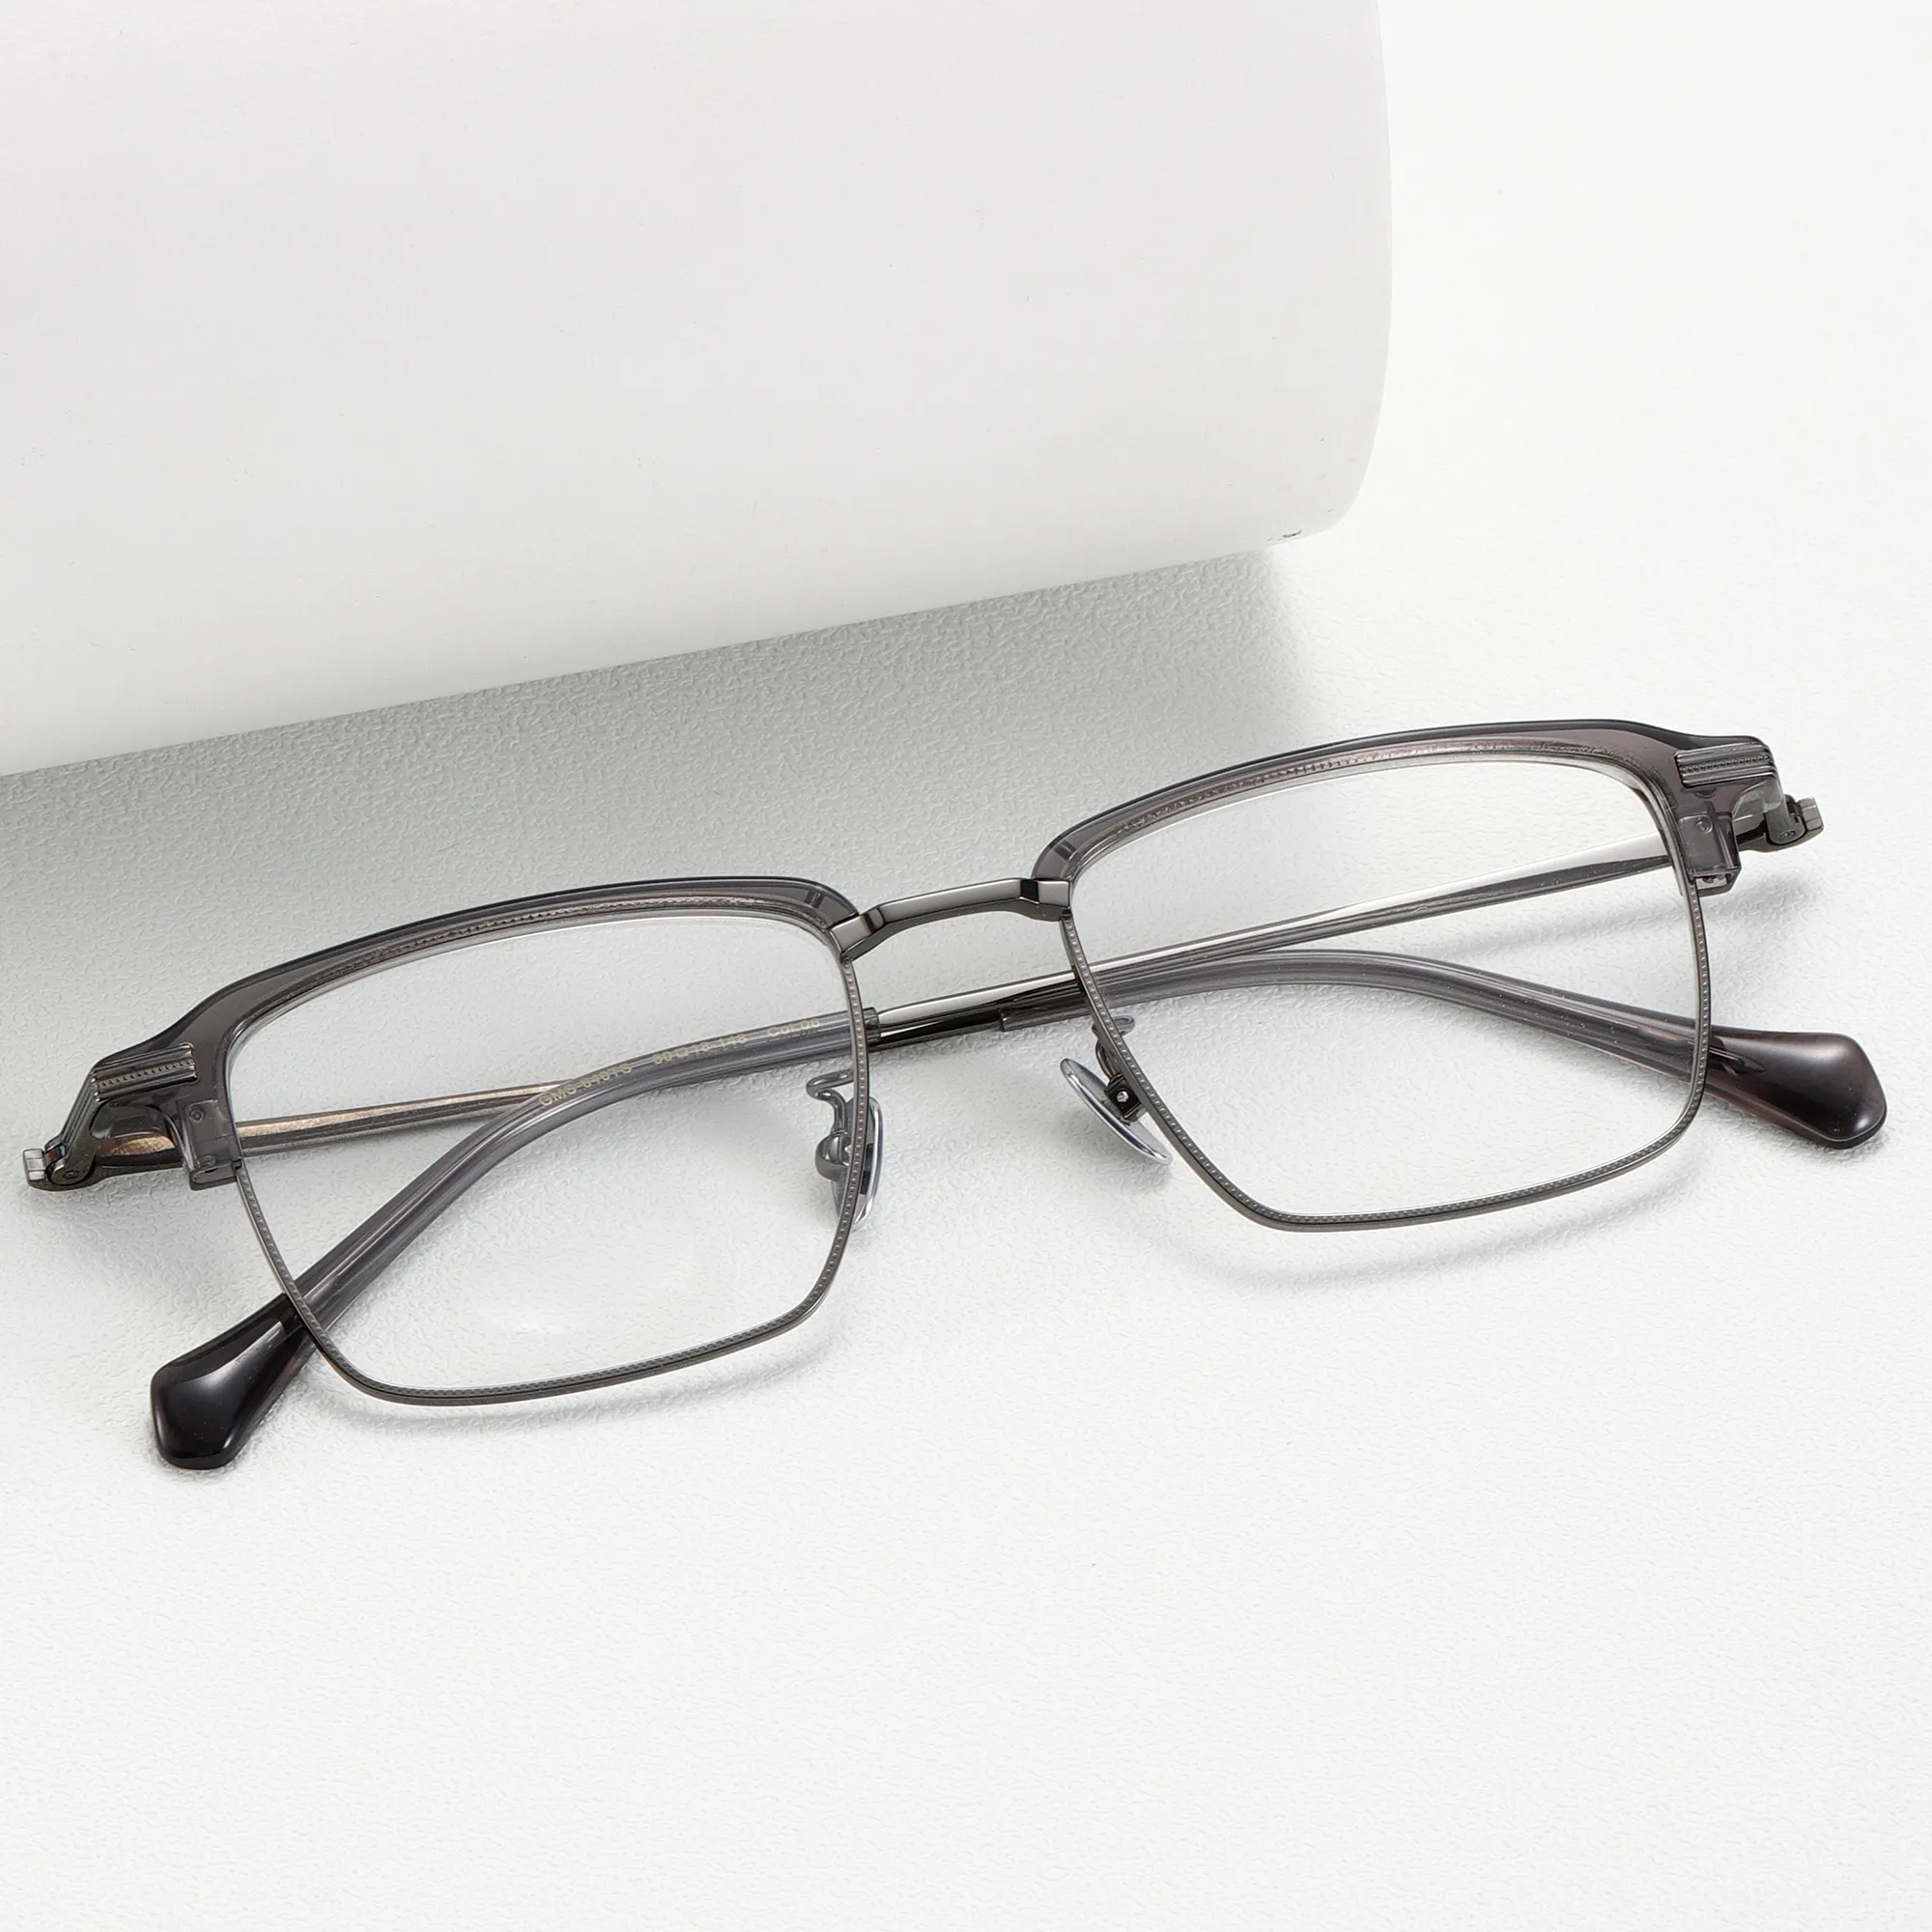 Figrad luxe Anti-lumière bleue demi-monture lunettes titane matériel OEM conception optique adultes hommes mode lunettes cadres